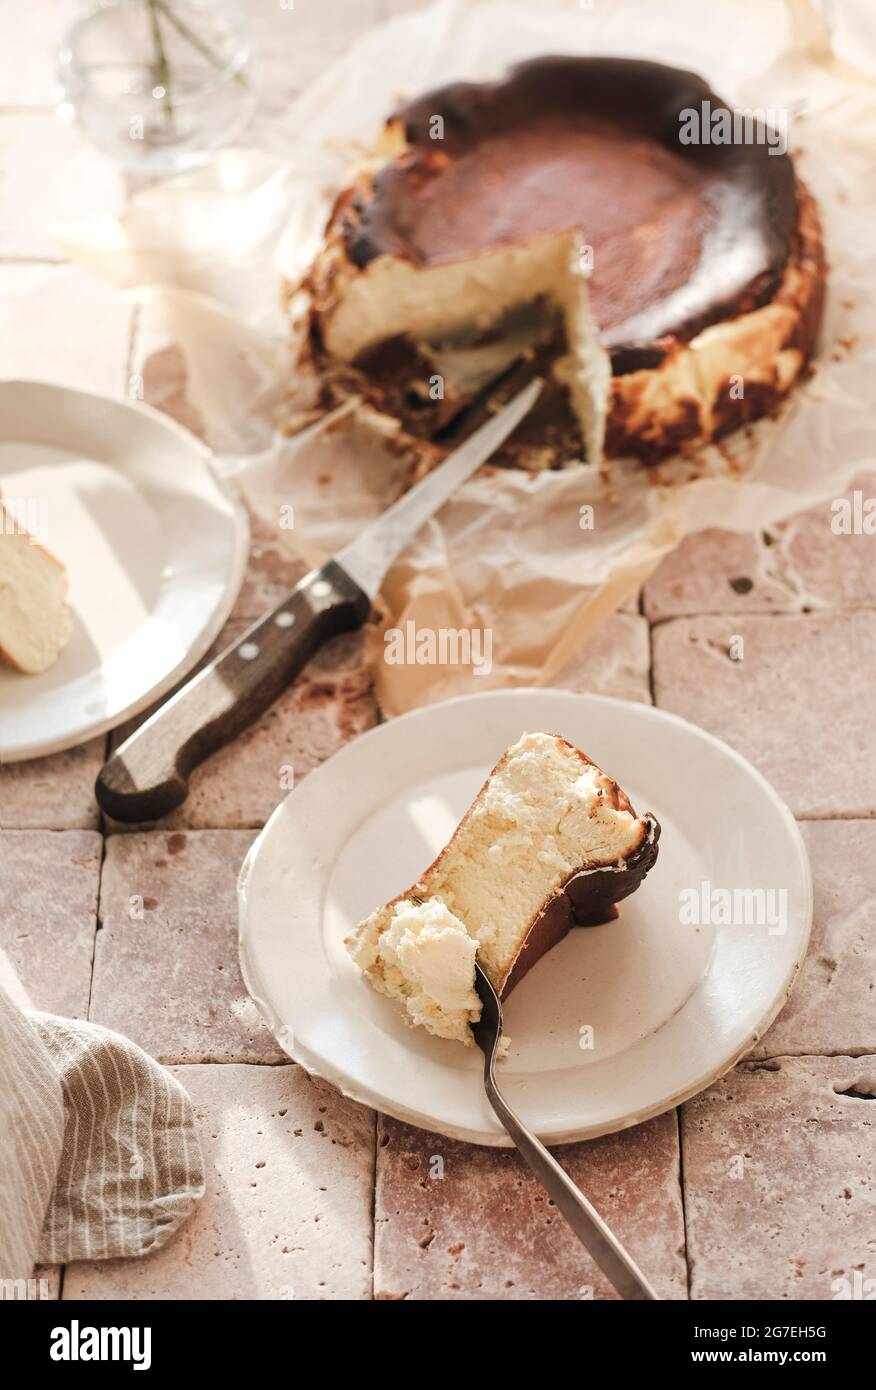 Morceau de San Sebastian maison a brûlé cheesecake sur plaque blanche, vue de dessus, foyer sélectif. Concept de desserts artisanaux faits maison Banque D'Images